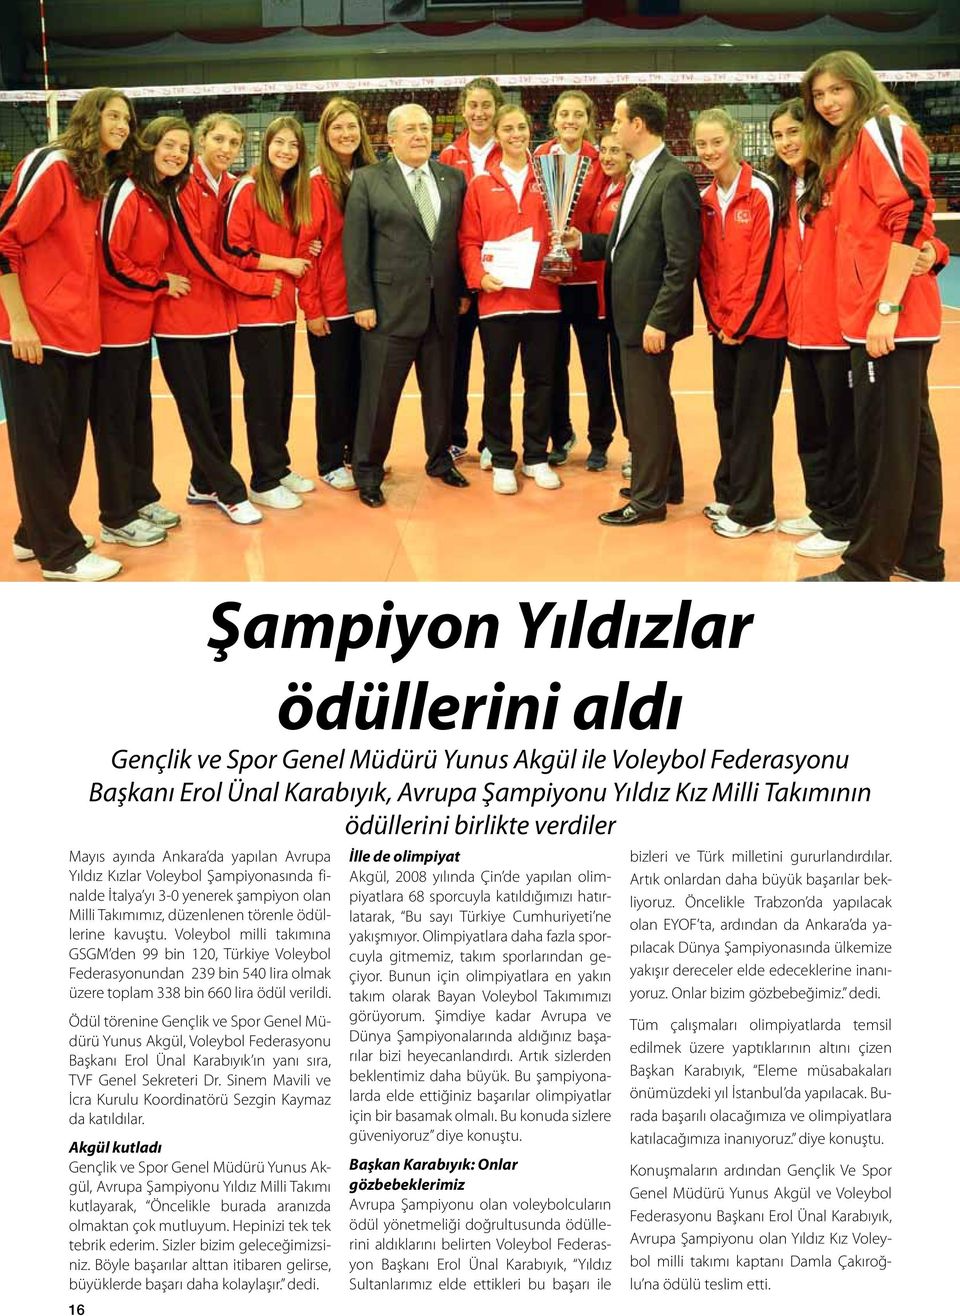 Voleybol milli takımına GSGM den 99 bin 120, Türkiye Voleybol Federasyonundan 239 bin 540 lira olmak üzere toplam 338 bin 660 lira ödül verildi.